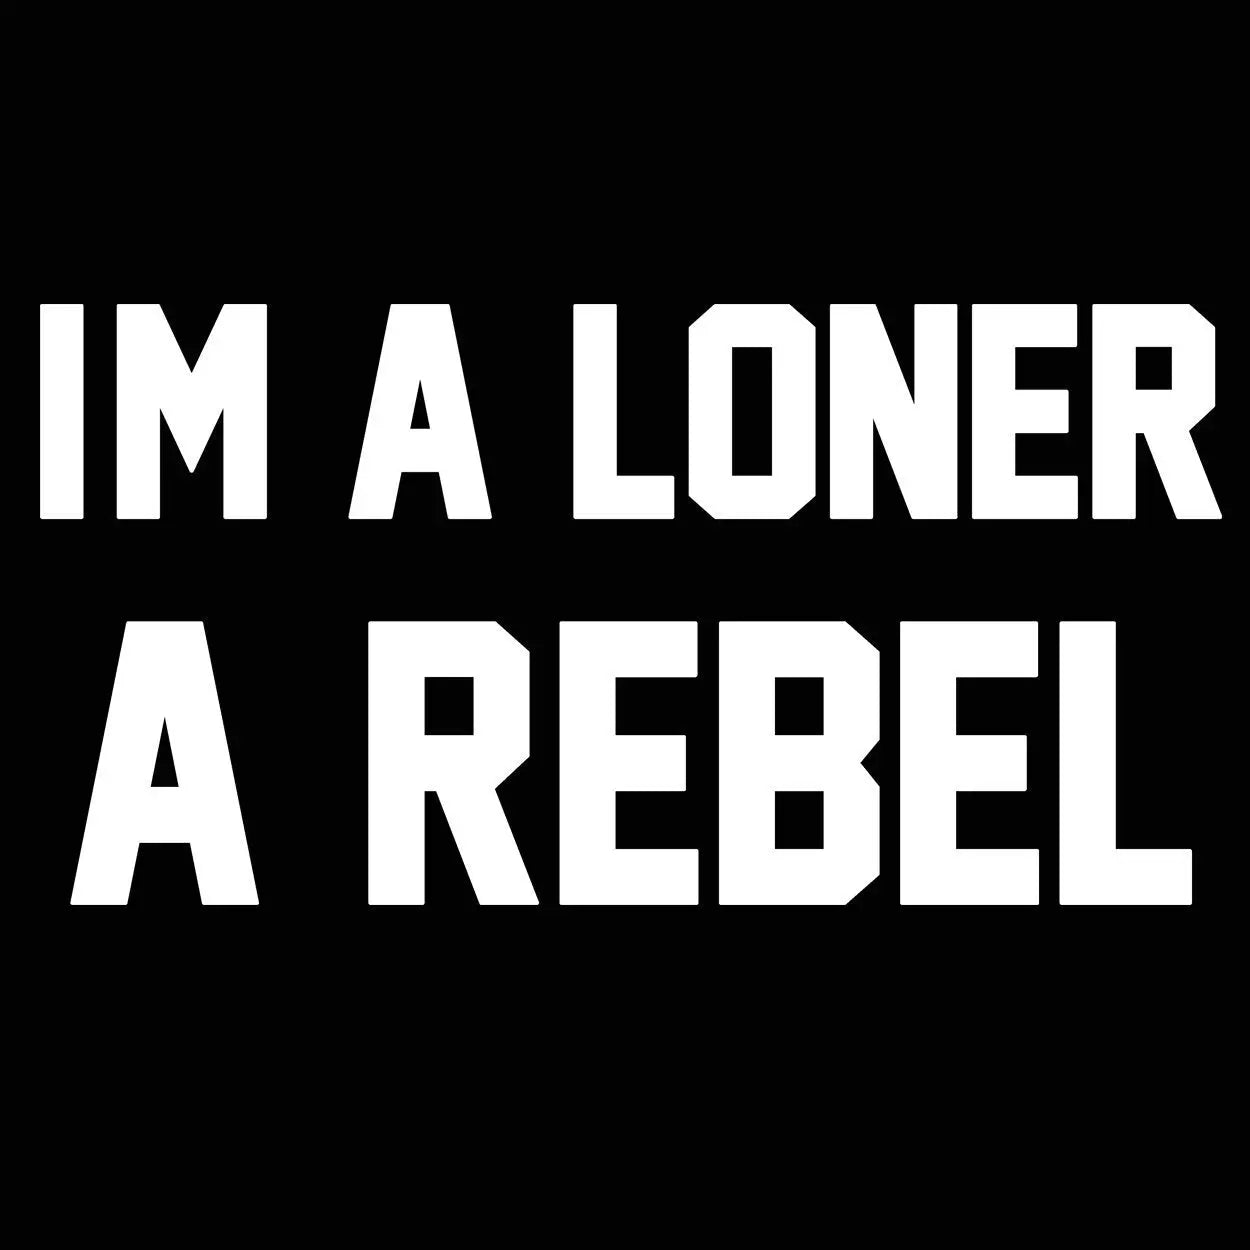 I'm A Loner A Rebel